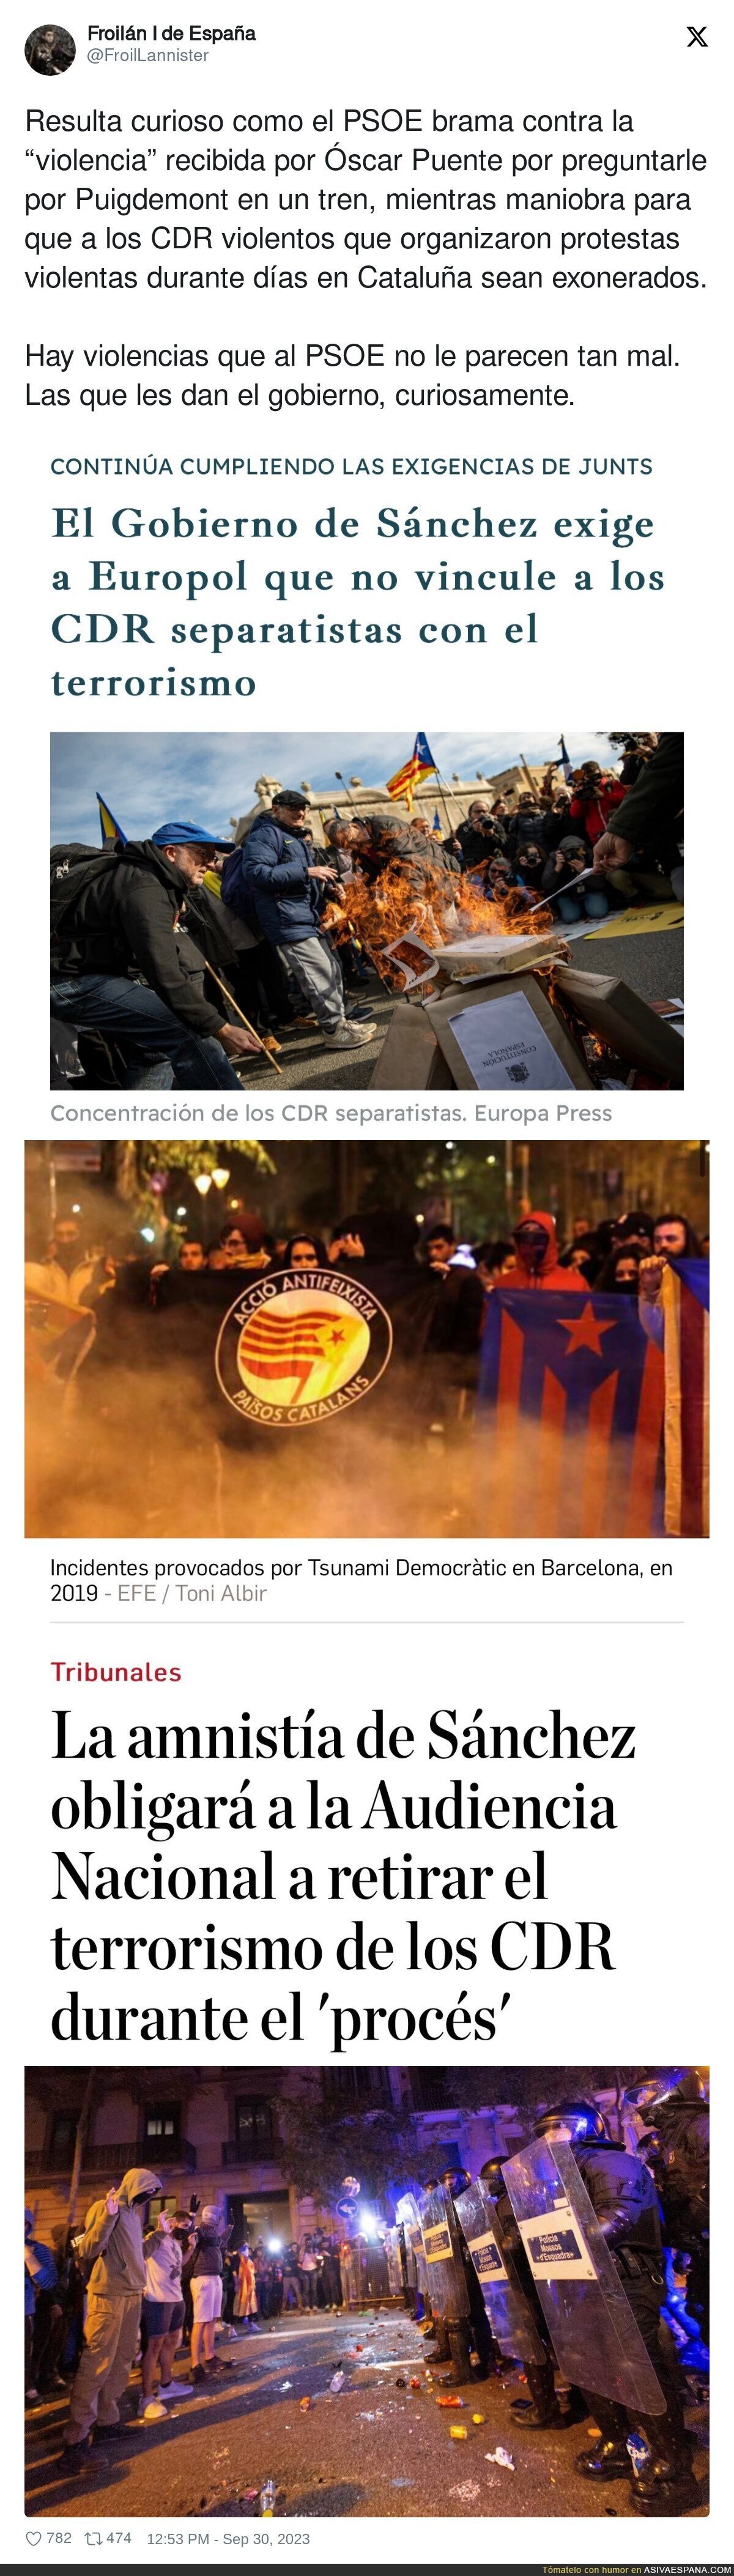 La violencia que gusta al PSOE